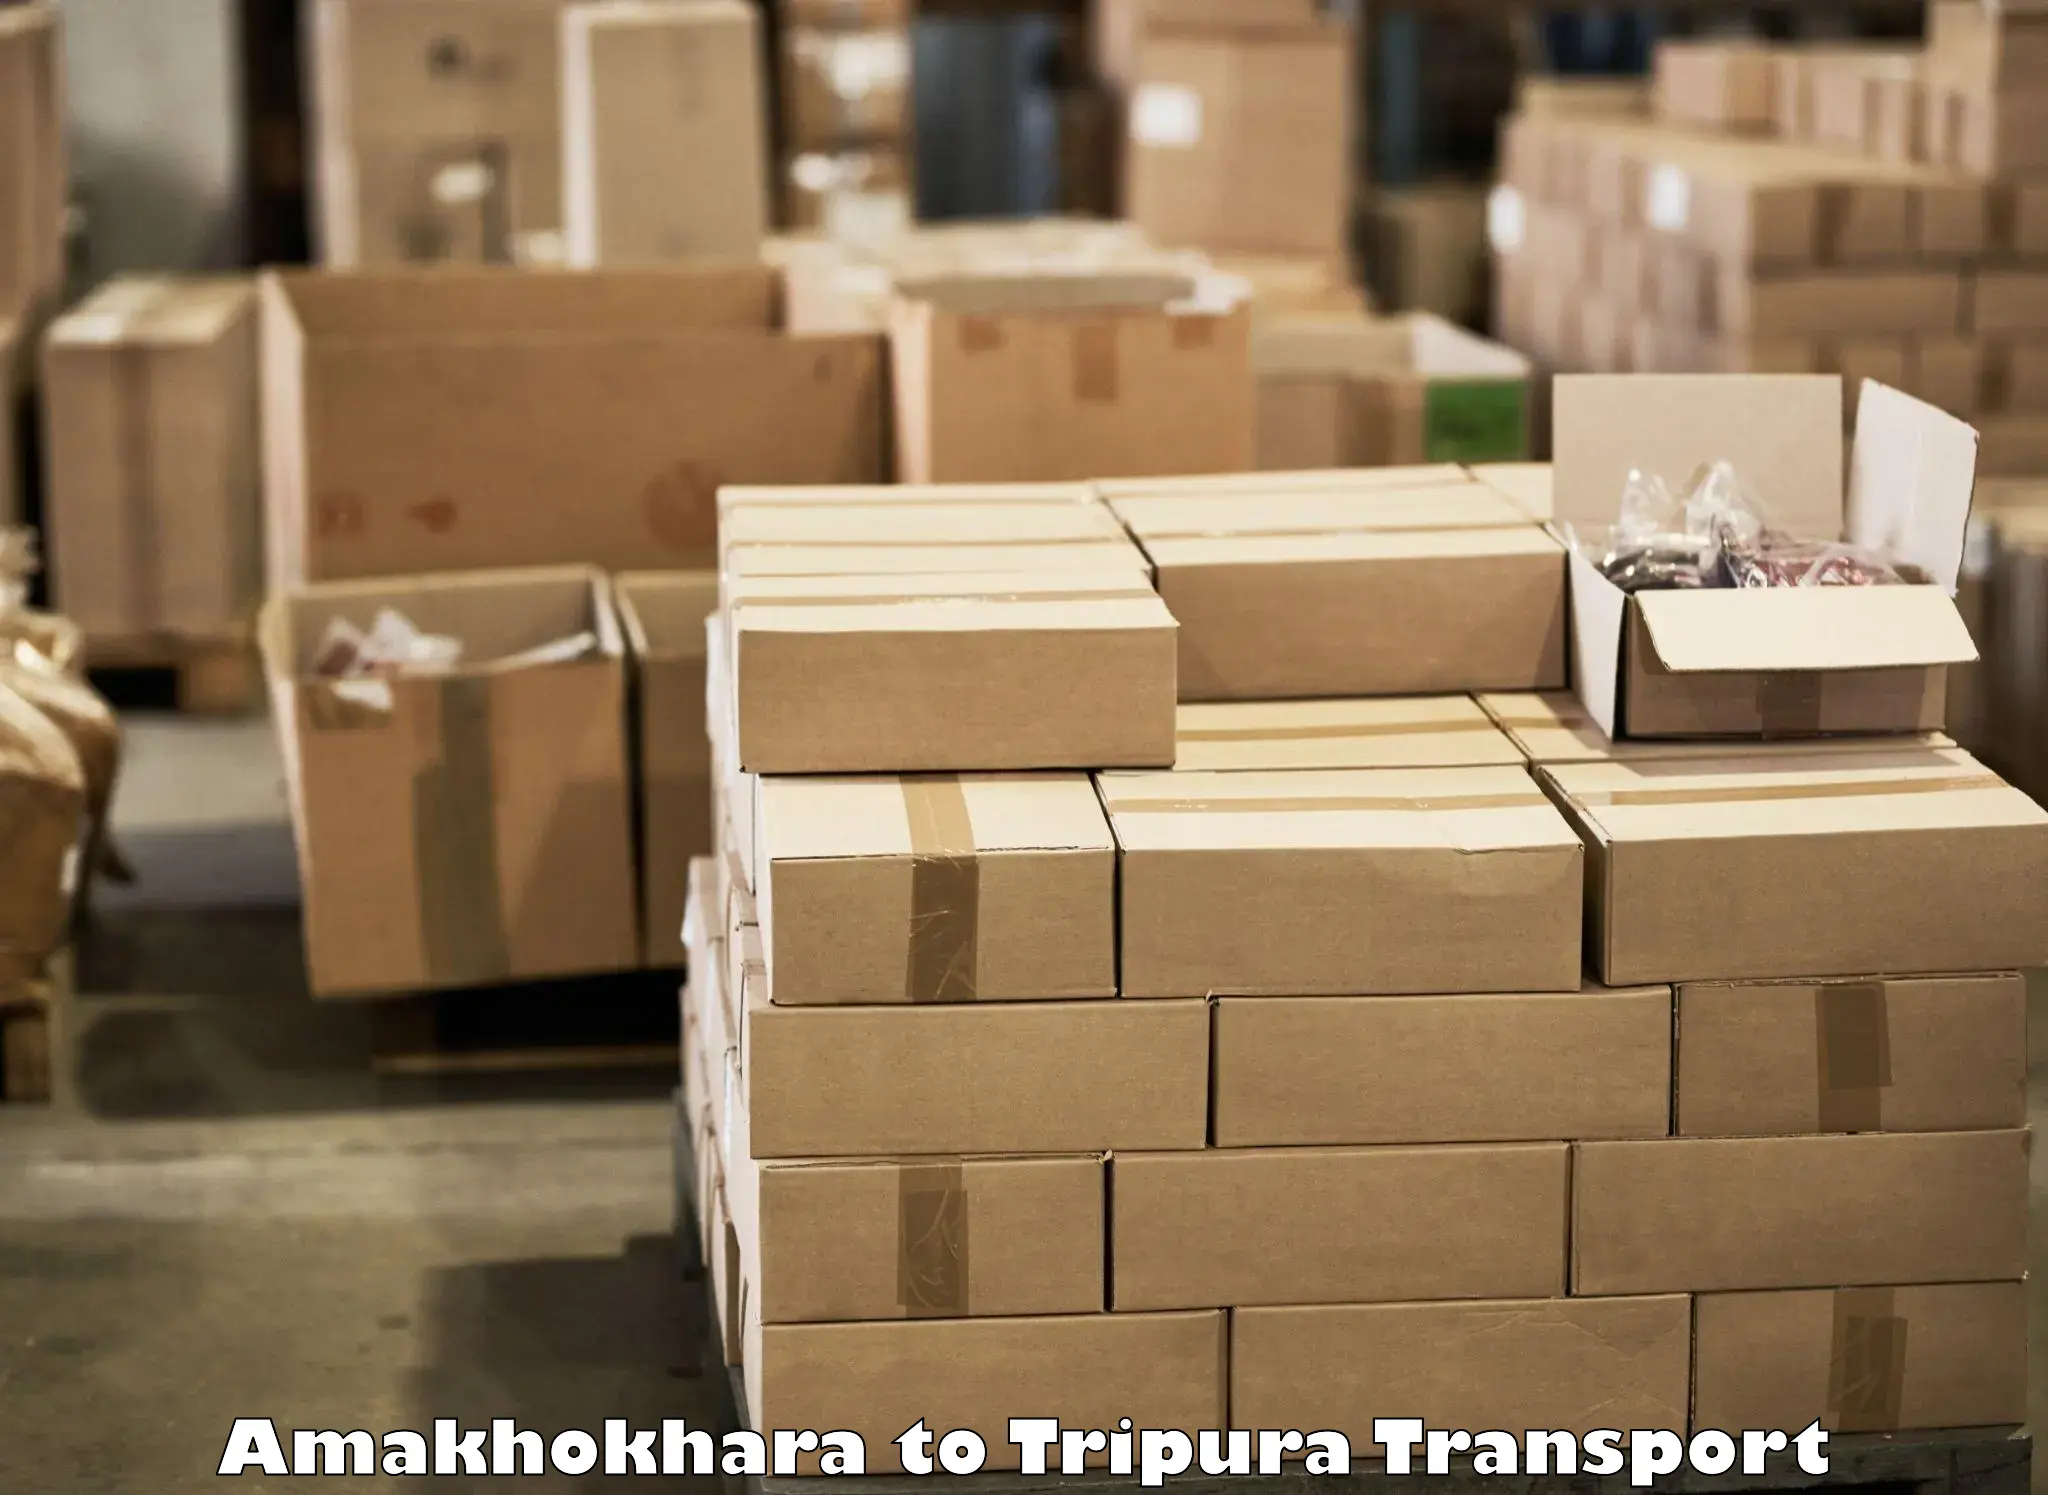 Transportation services Amakhokhara to Udaipur Tripura